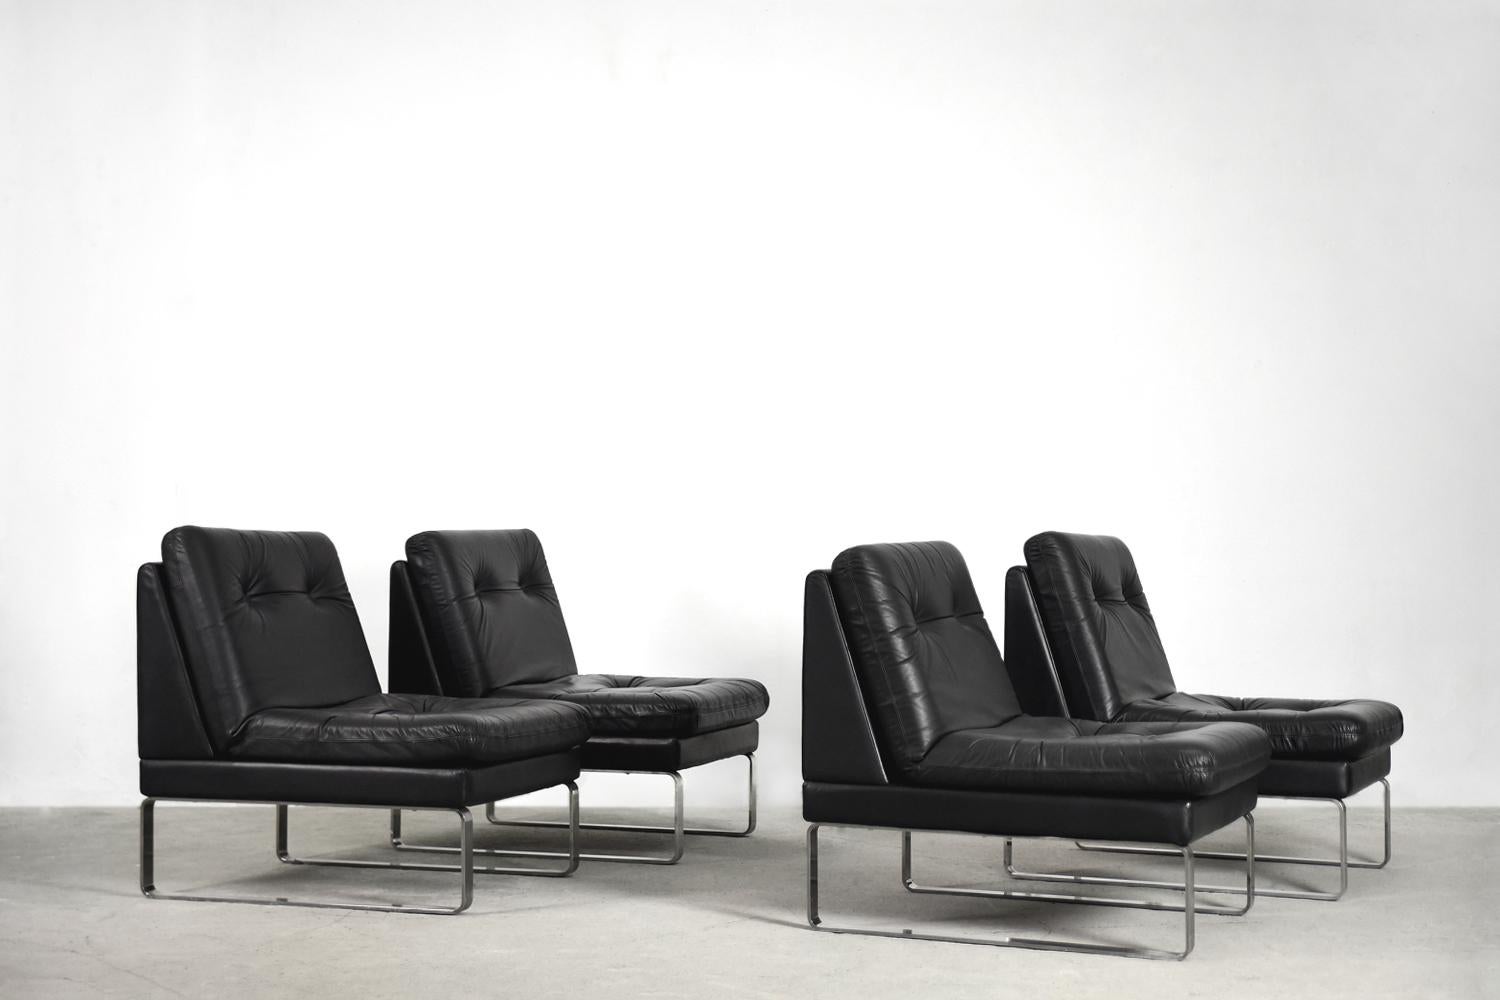 Dieses modulare Sofa wurde von Klöber, einer 1935 gegründeten deutschen Manufaktur, hergestellt. Er besteht aus vier separaten Sesseln aus schwarzem Leder. Der minimalistische Sockel ist aus verchromtem Stahl gefertigt. Klöber ist ein international